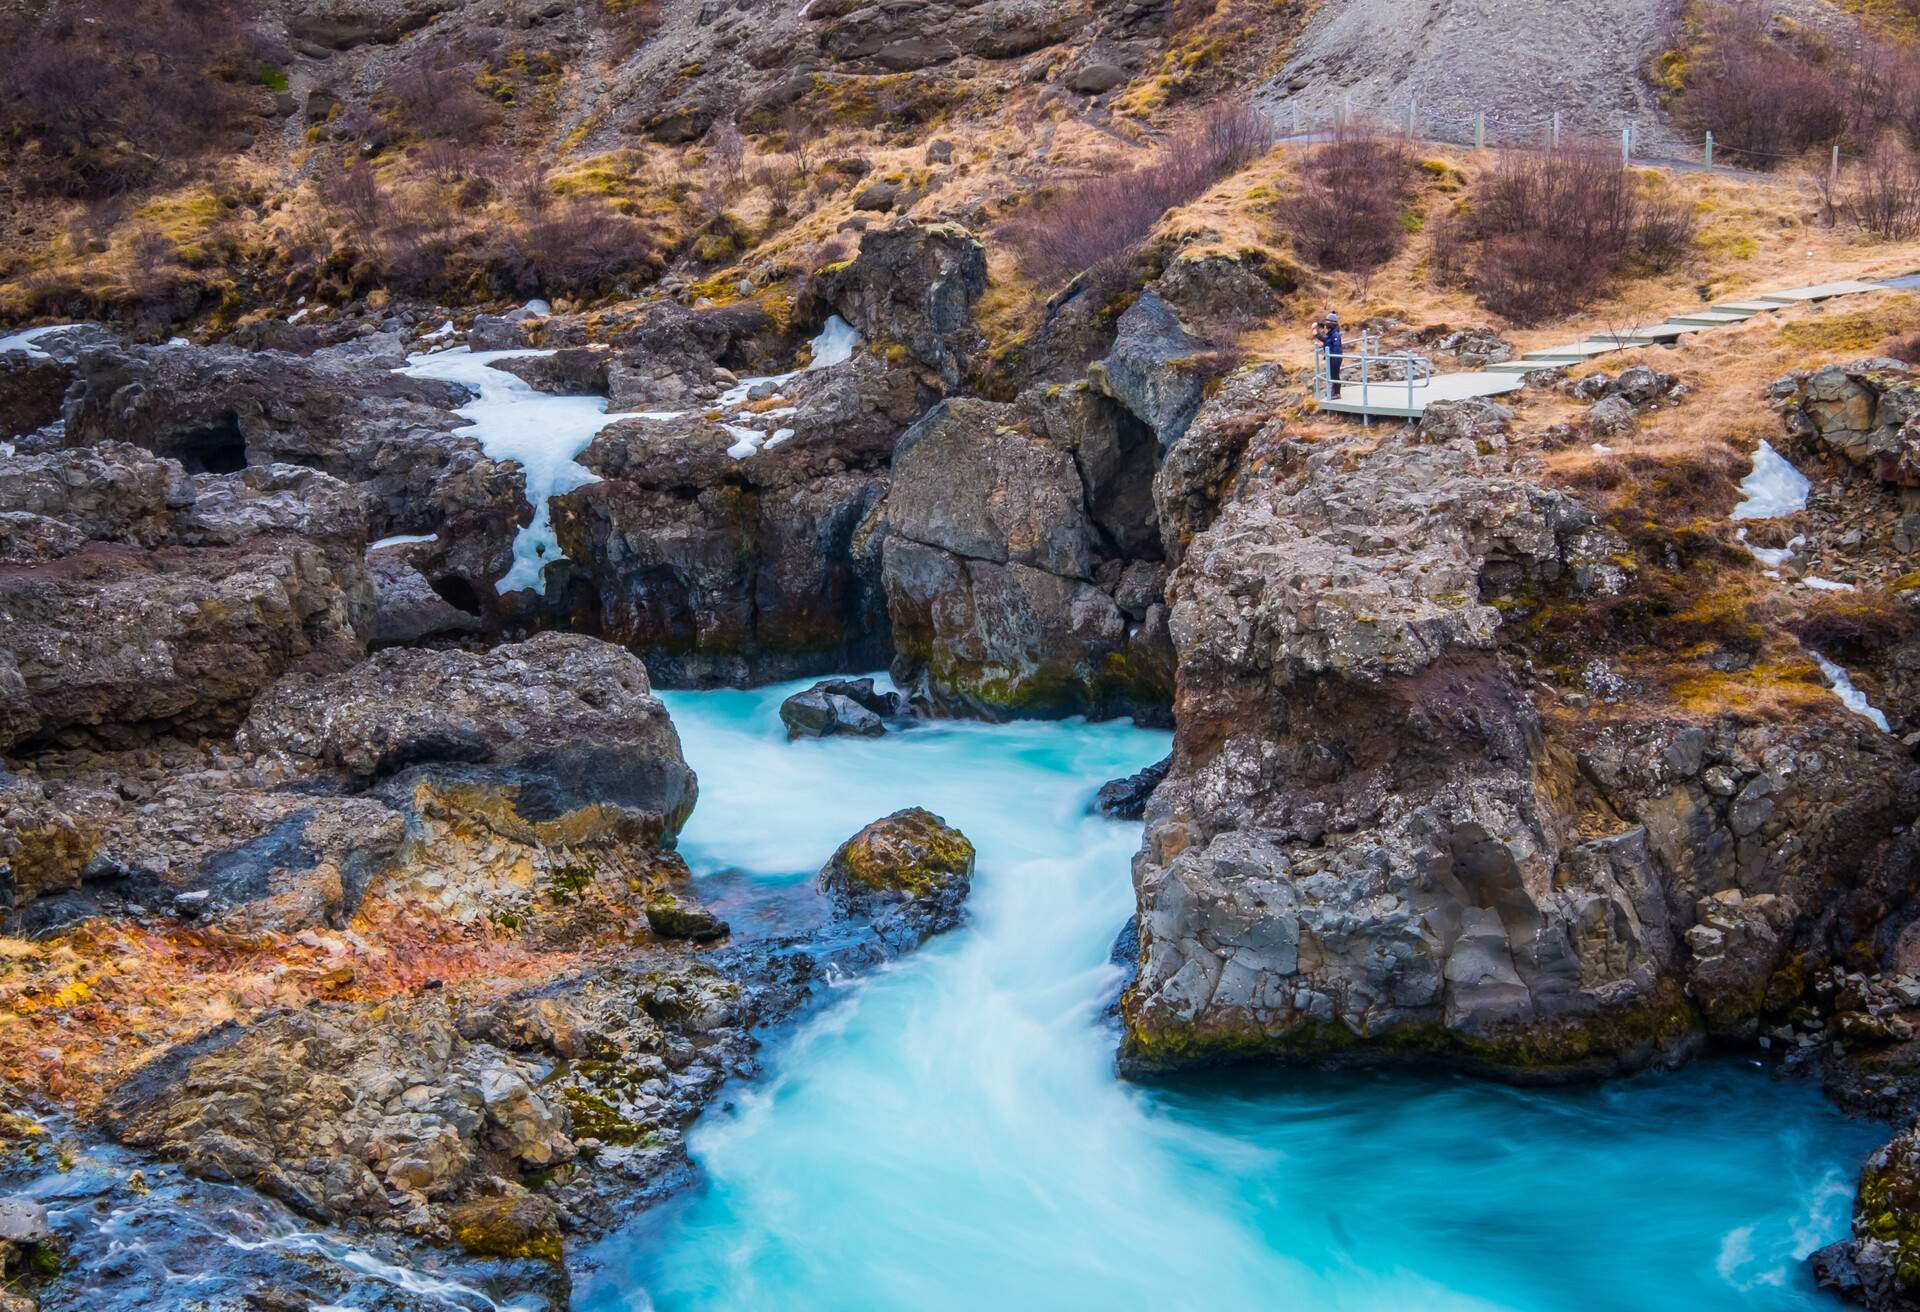 DEST_ICELAND_HRAUNFOSSAR_Barnafoss waterfall_GettyImages-654260056